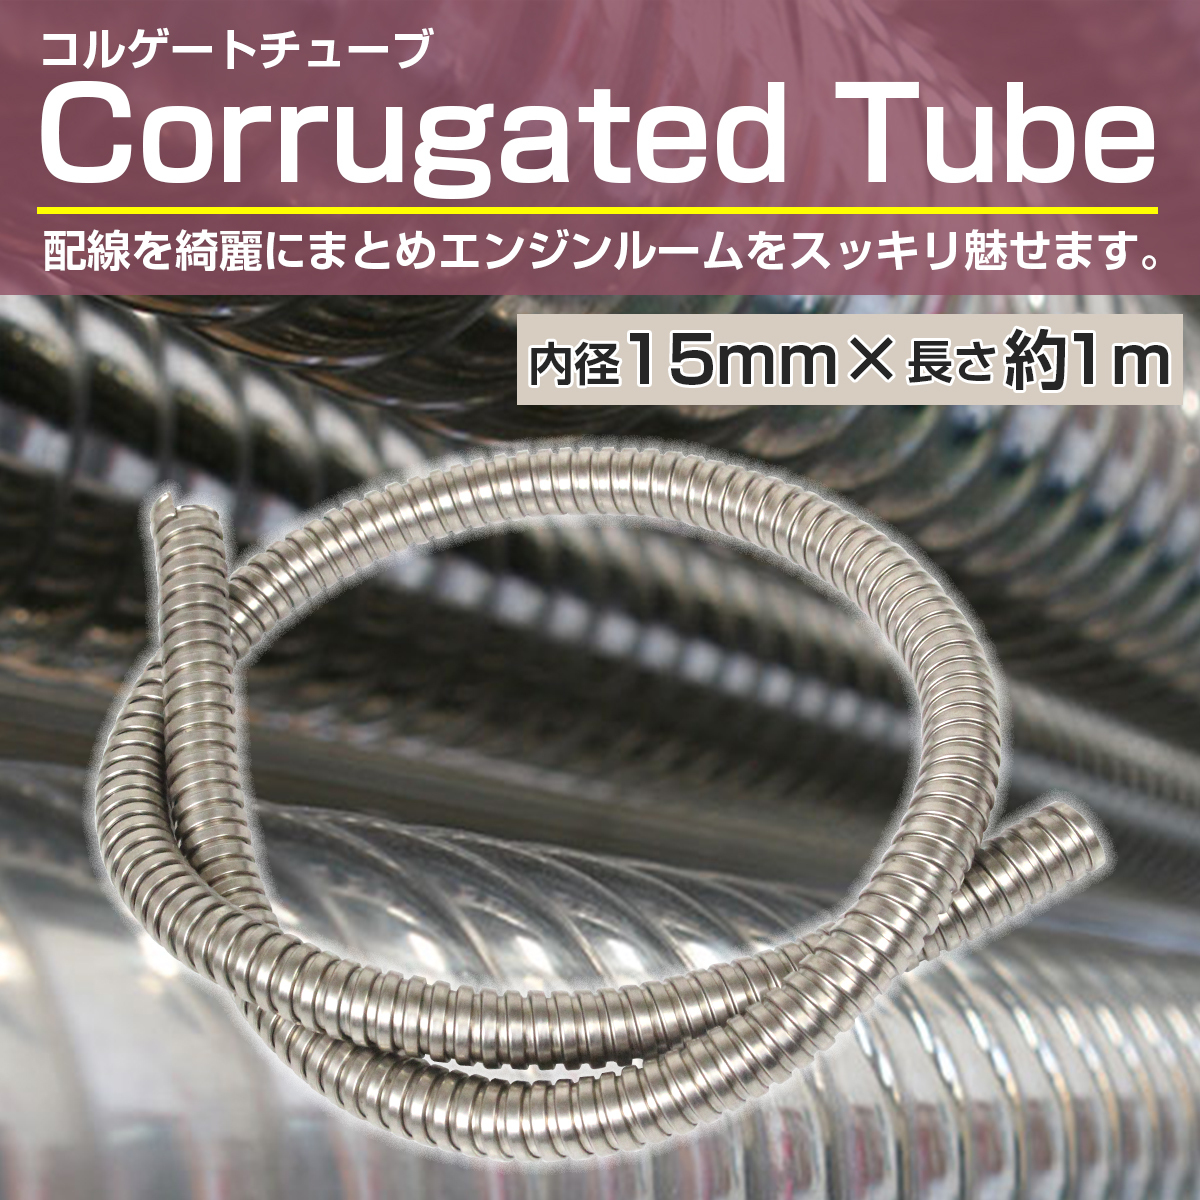  corrugate tube inside diameter 15mm 15φ length 1000mm 100cm 1m brake hose wiring code custom cover bike silver silver 